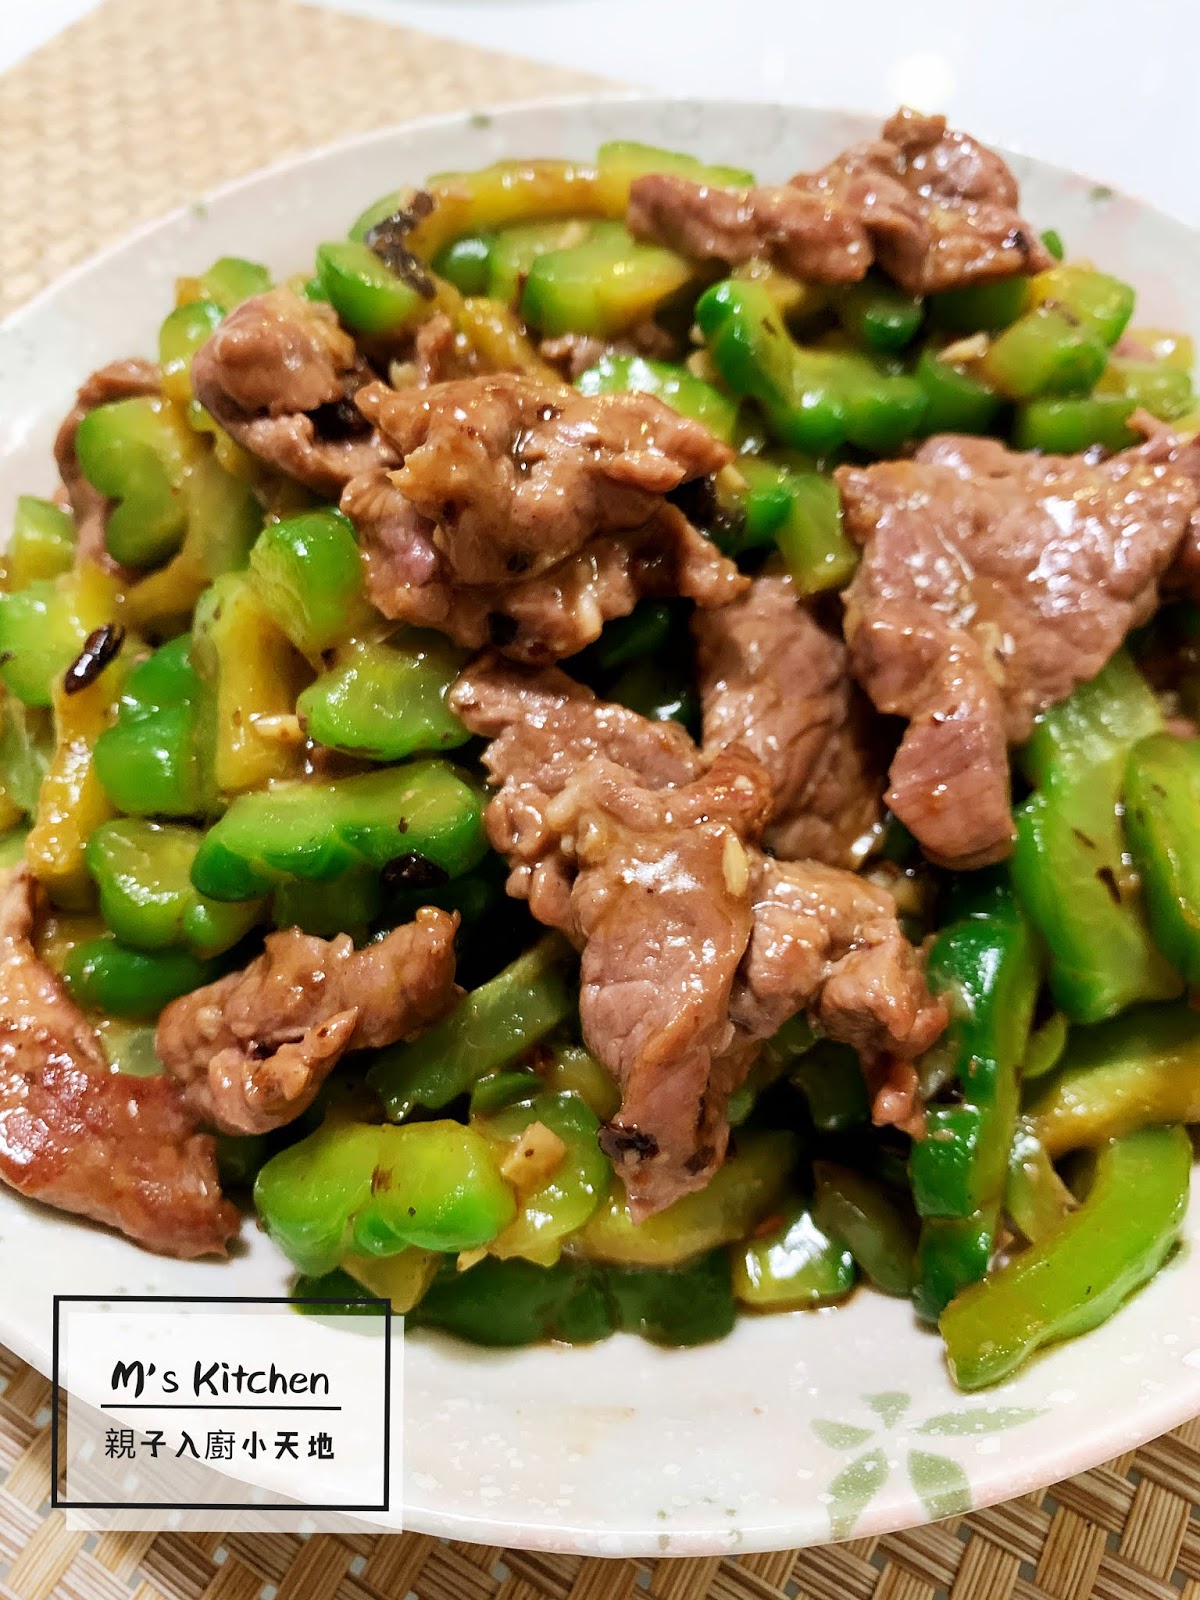 苦瓜炒牛肉 by 金魚媽媽的廚房 - 愛料理